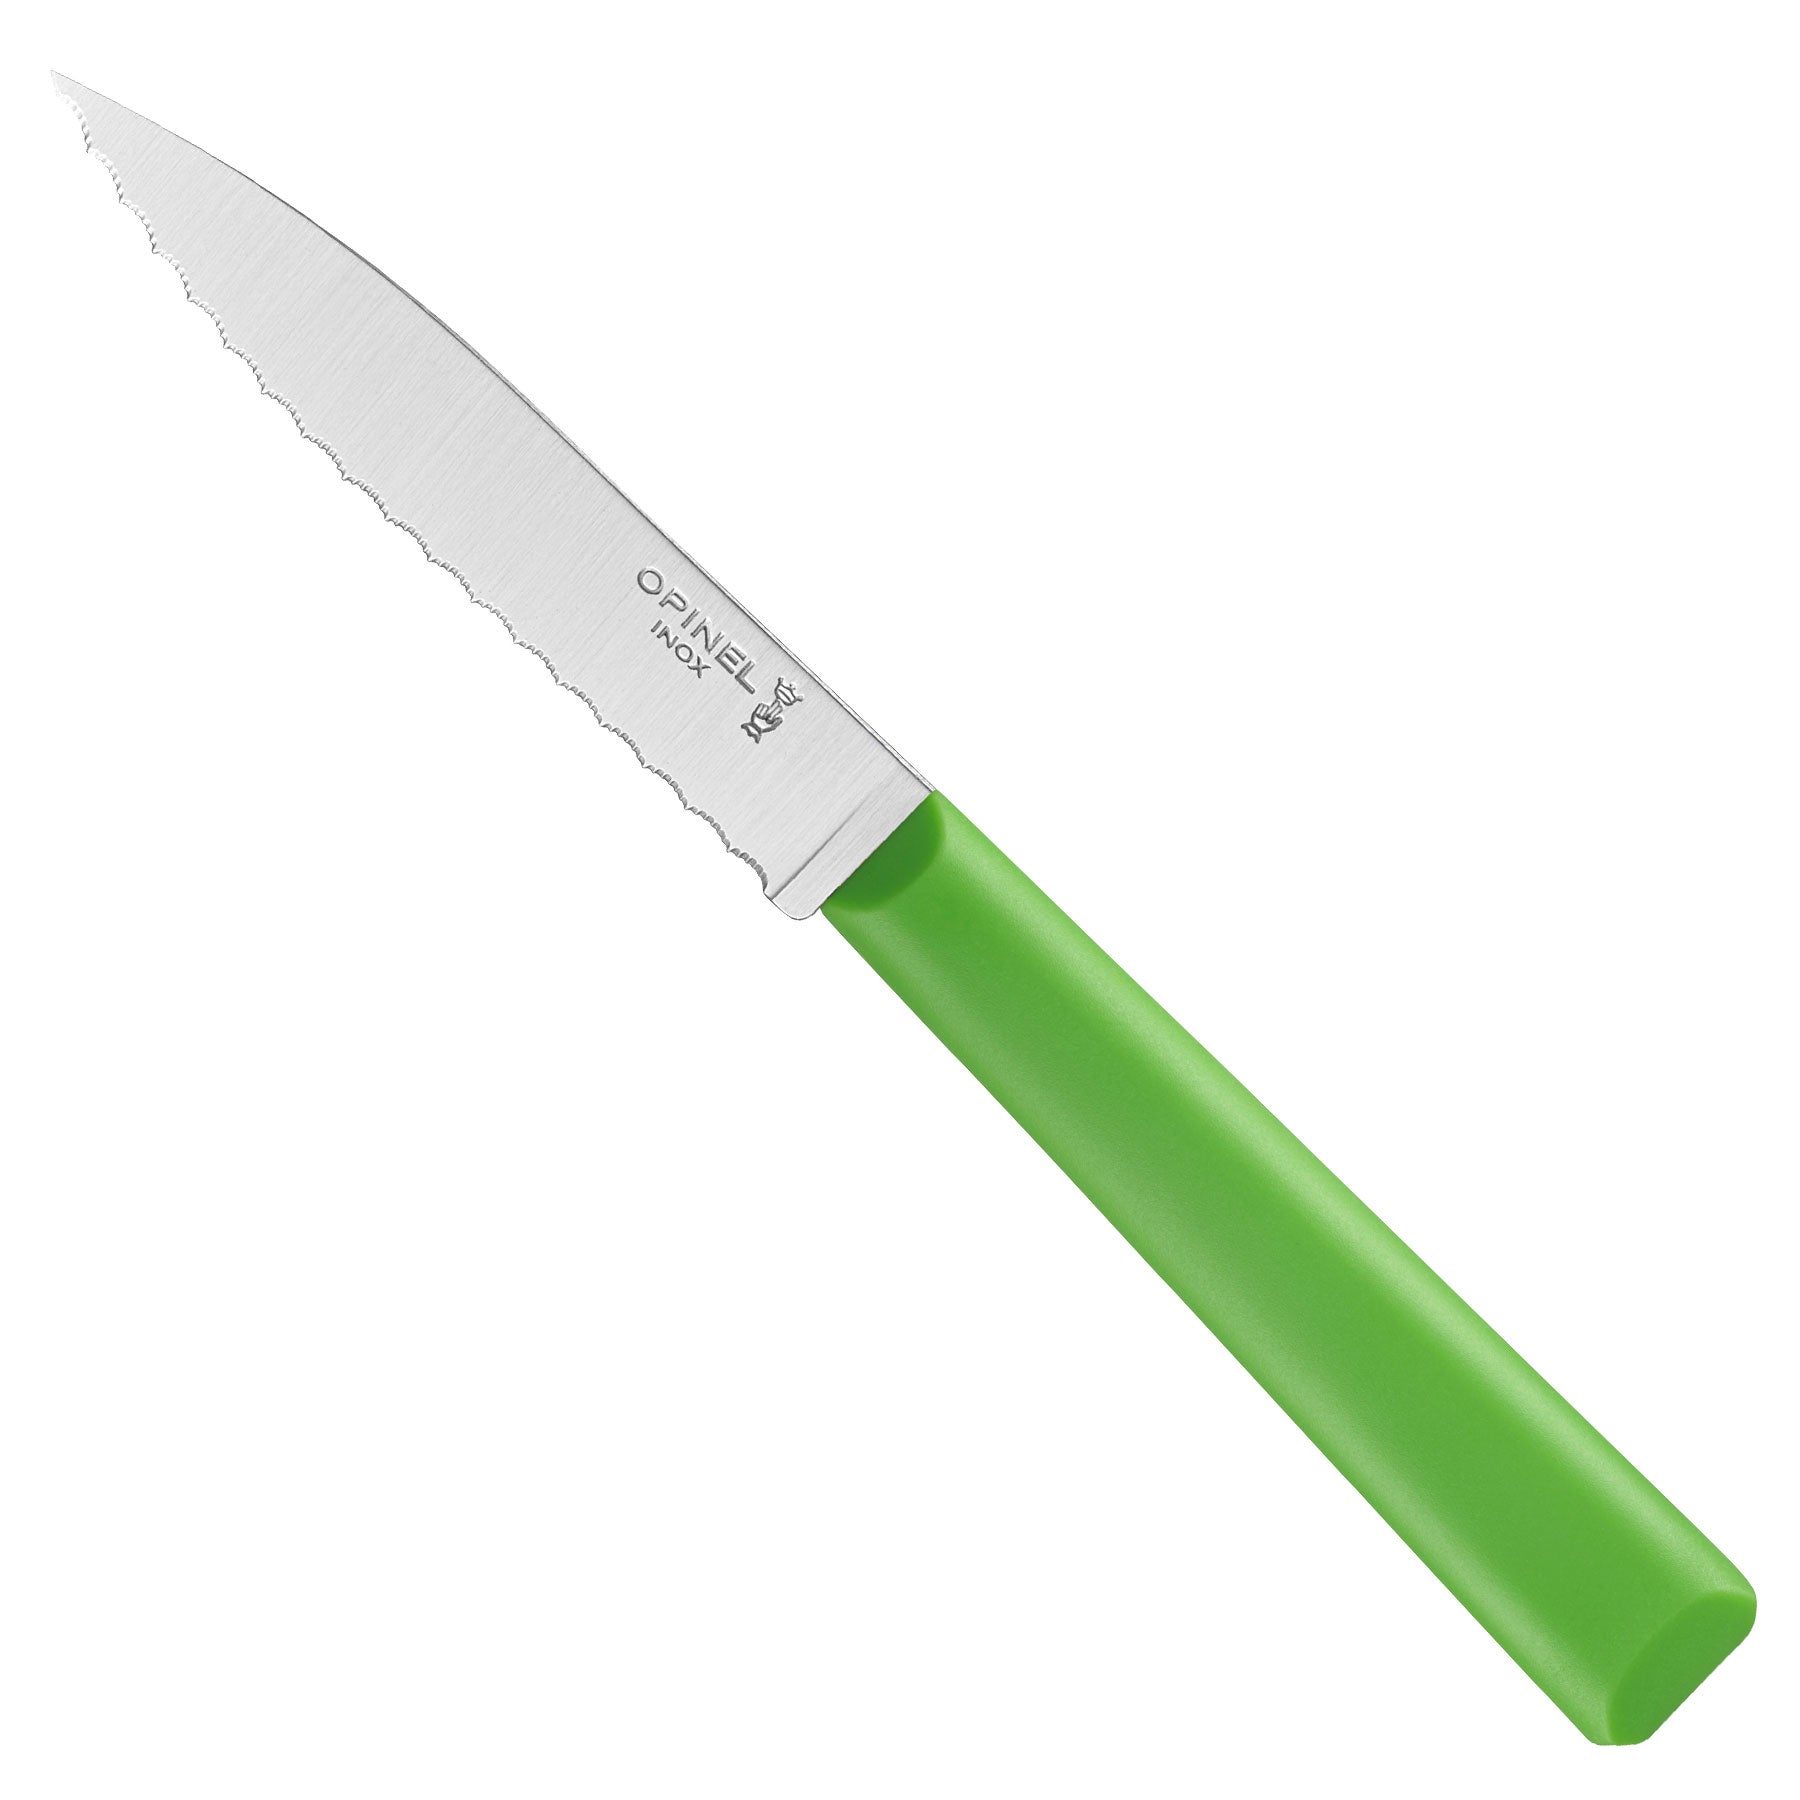 OP01233 Opinel Paring Knife Set